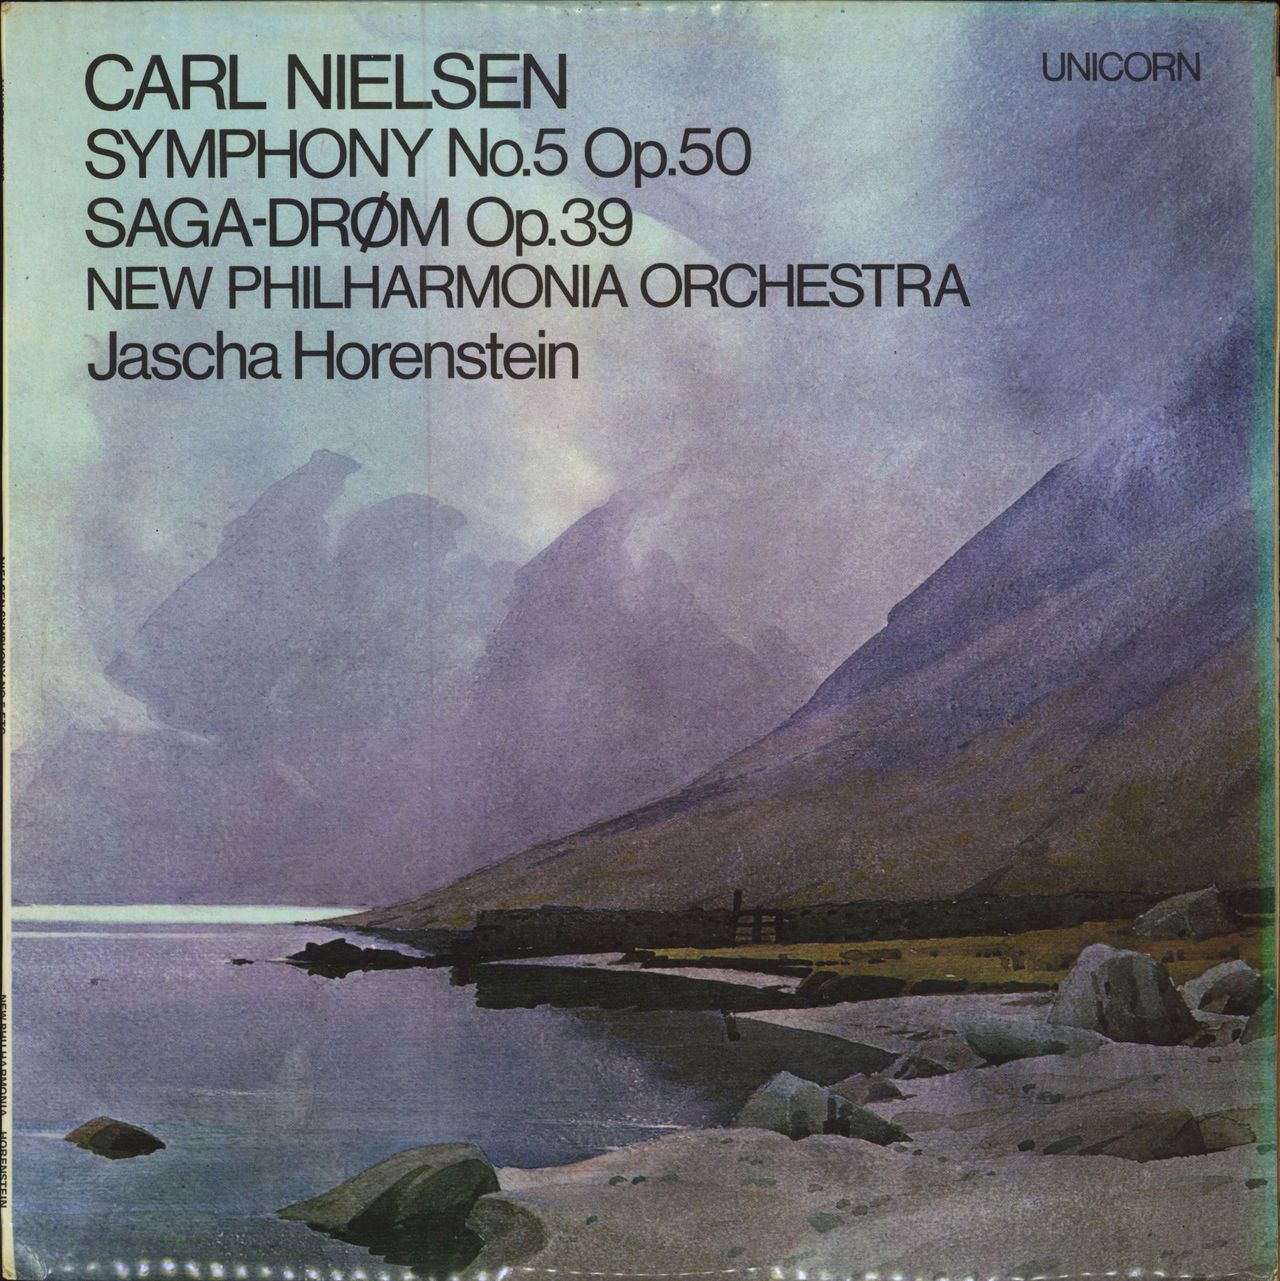 Carl Nielsen Symphony No. 5 Op. 50 / Saga-Drøm Op. 39 UK vinyl LP album (LP record) RHS300